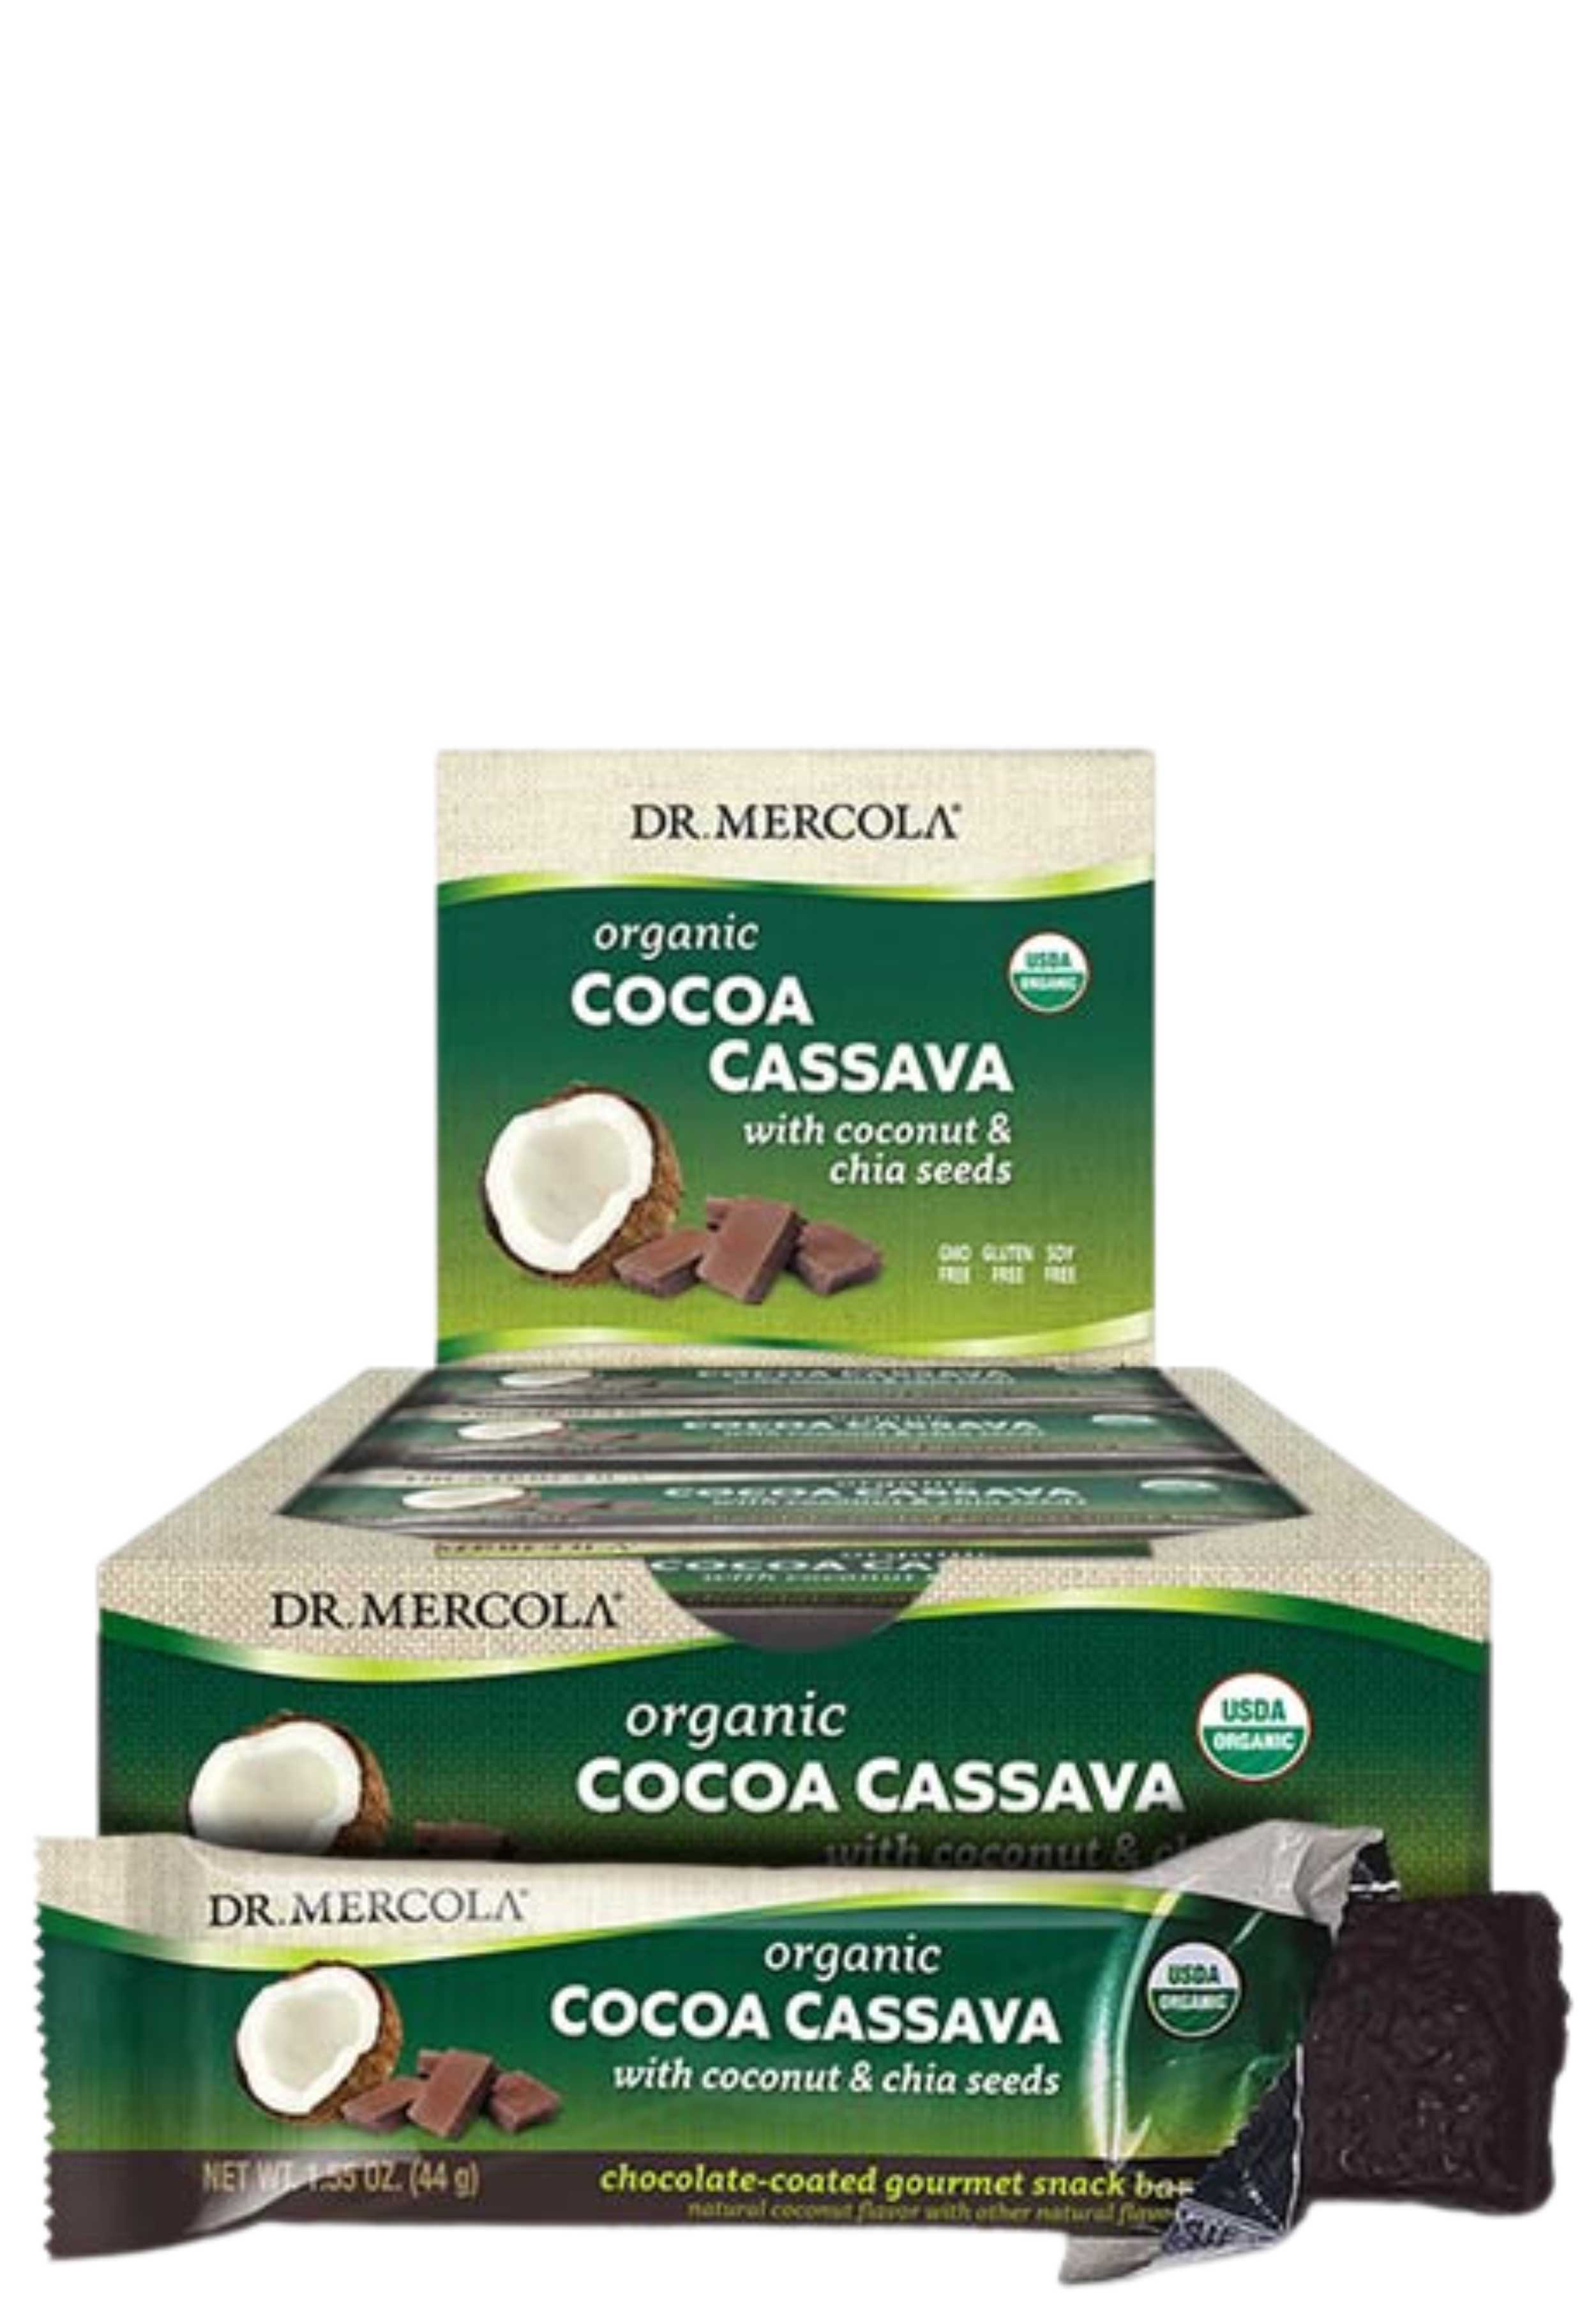 Dr. Mercola Cocoa Cassava Bar